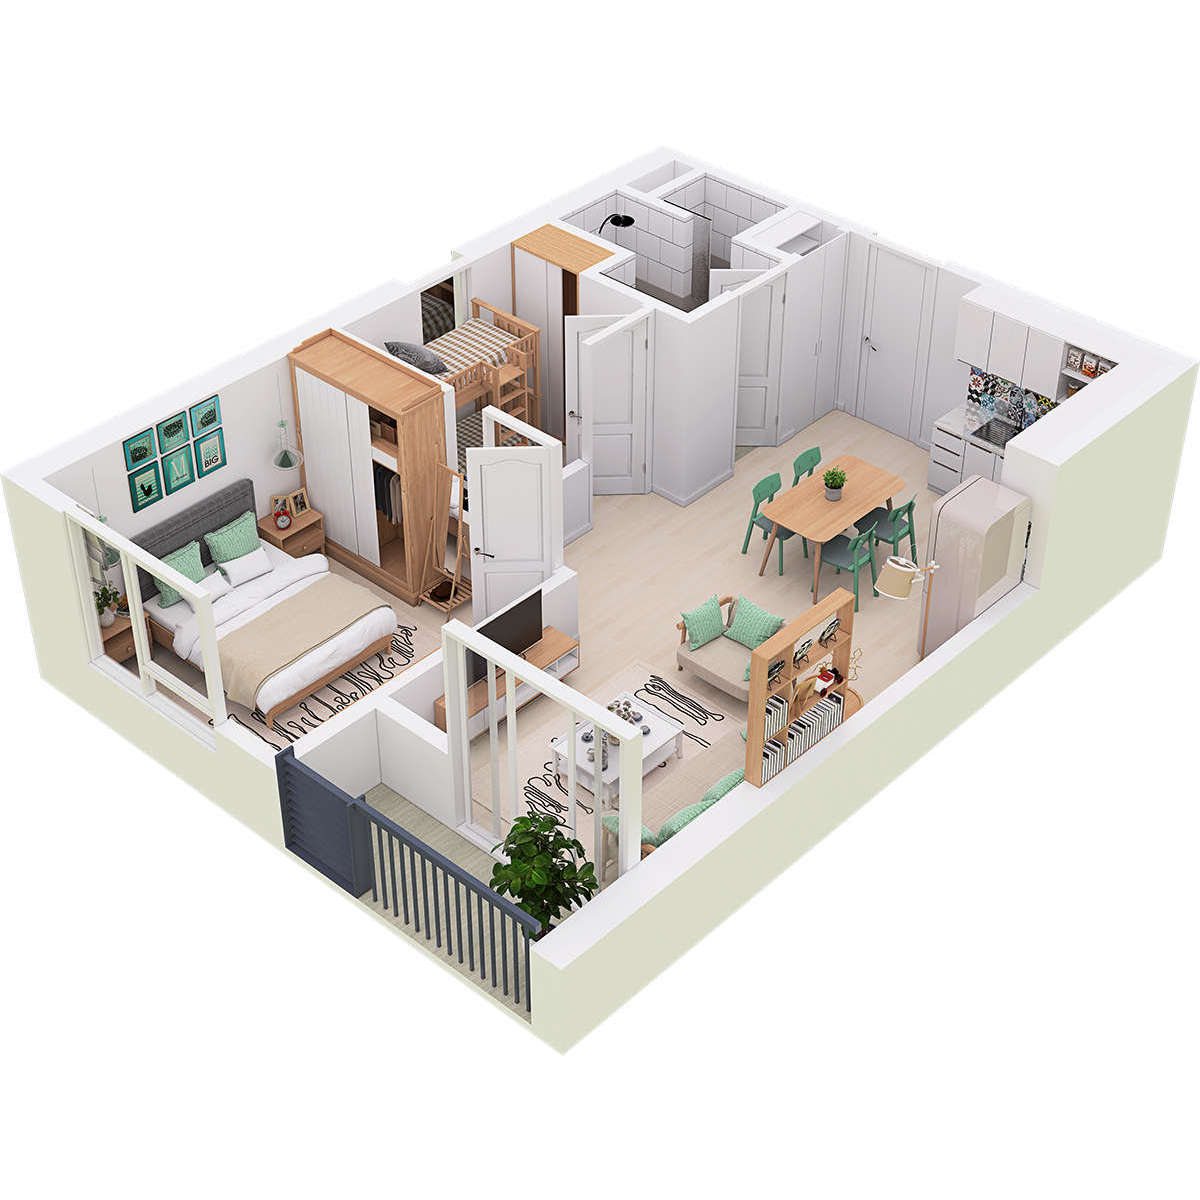 HOT Thiết kế nội thất nhà căn hộ cho chung cư nhỏ 50m2 tại TPHCM